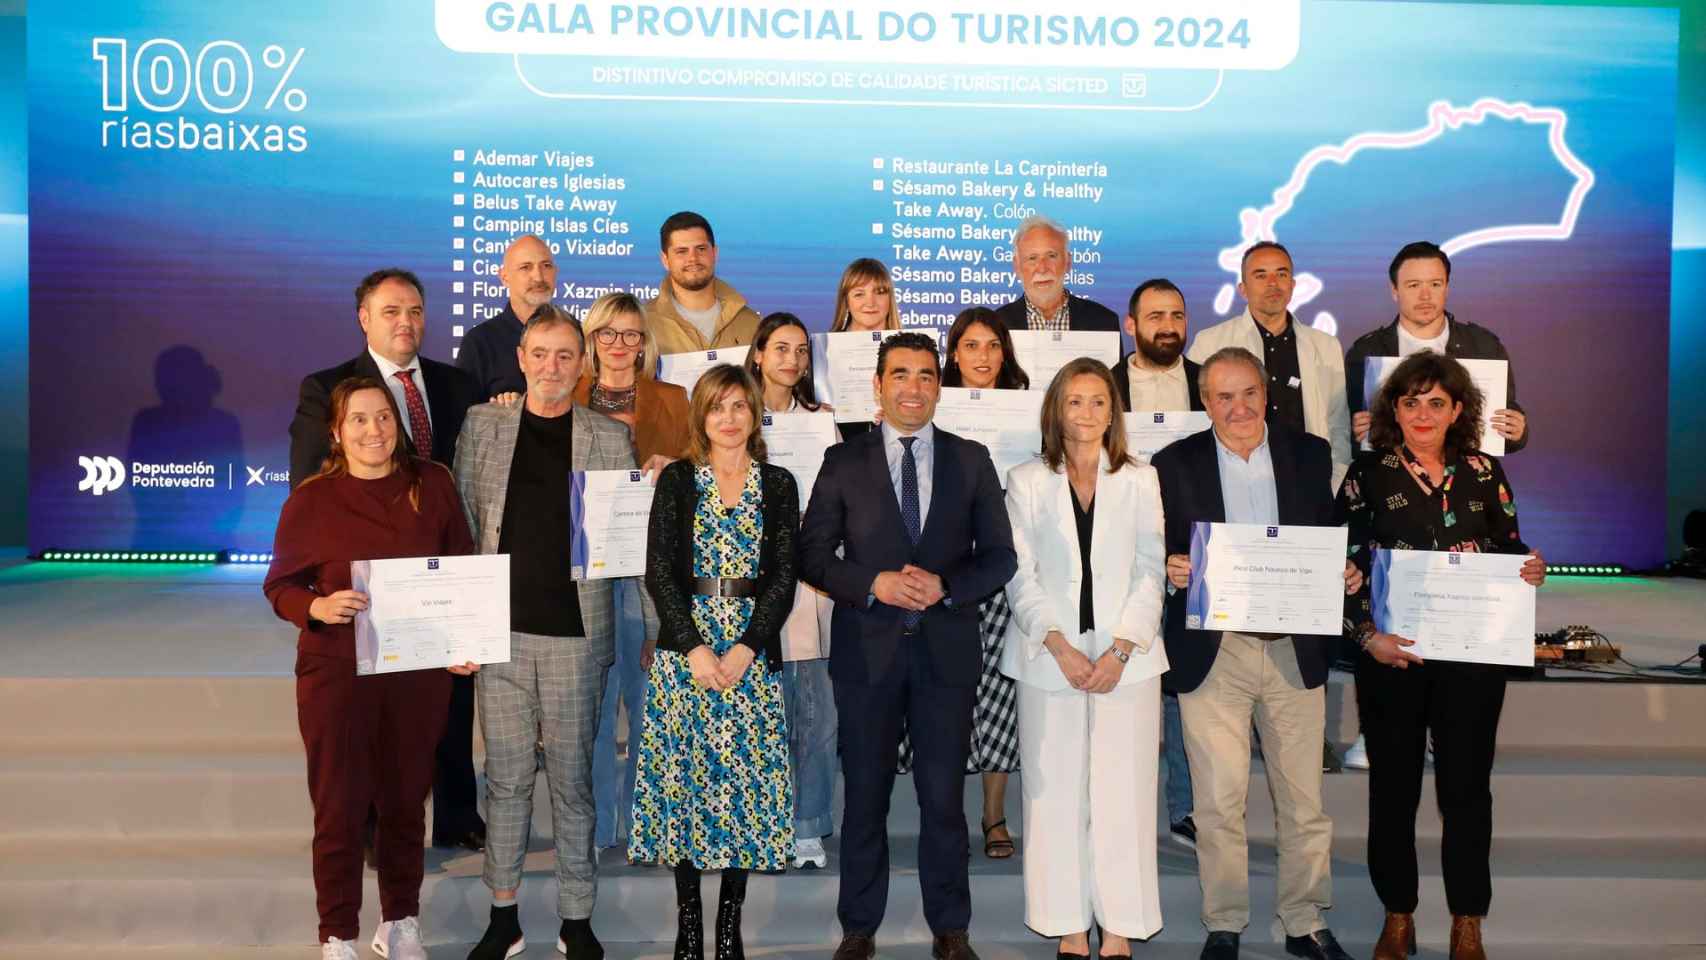 Gala Provincial del Turismo, celebrada en Vigo el 10 de abril de 2024.